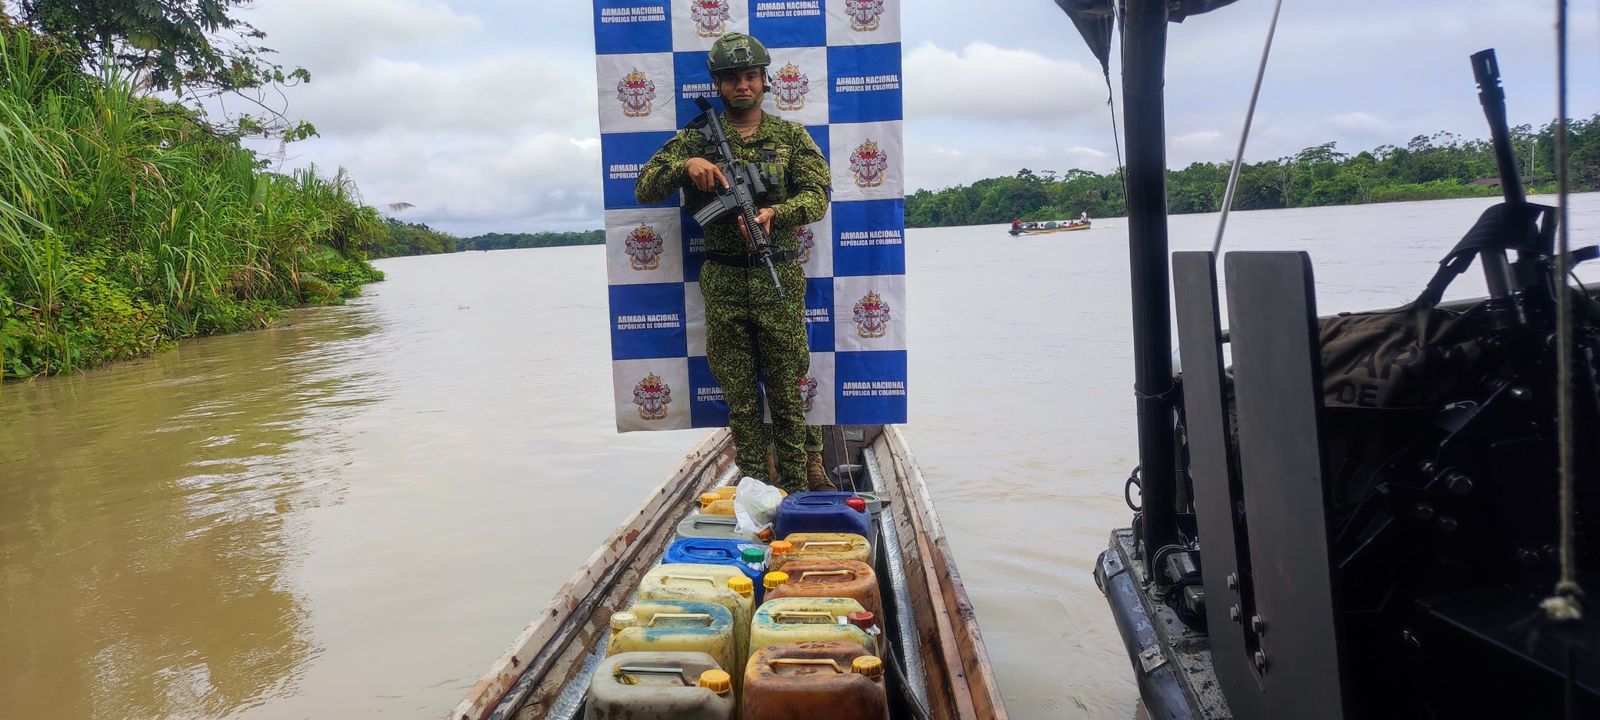 “Se incautaron insumos usados para el procesamiento de sustancias ilícitas” Armada de Colombia